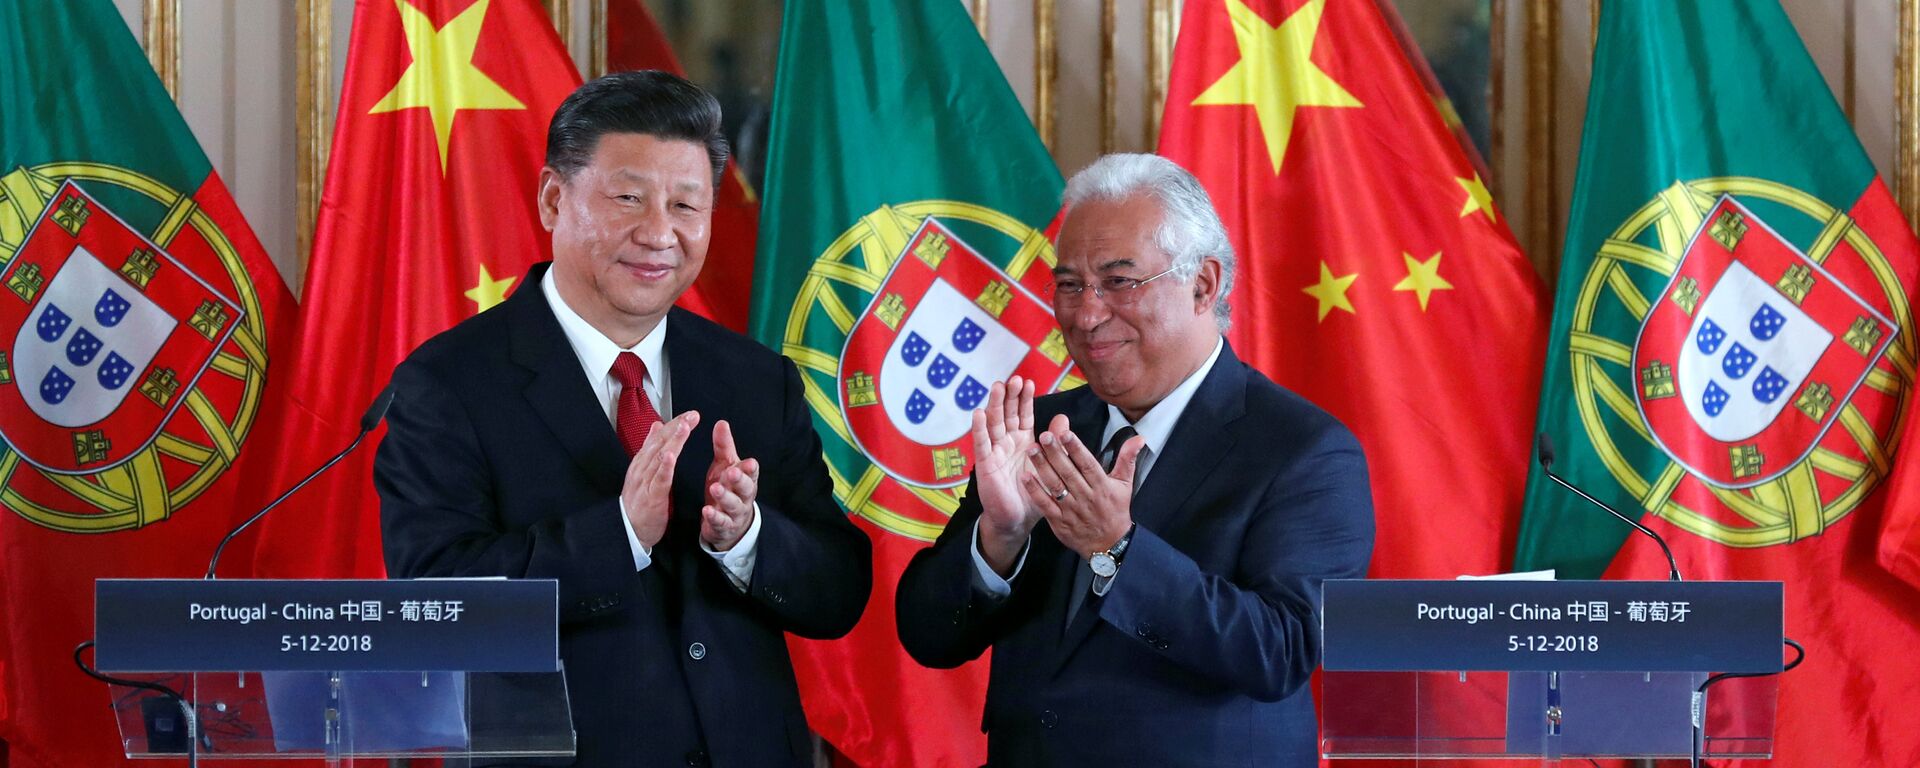 Líder chinês Xi Jinping e premiê português António Costa durante encontro no Palácio de Queluz, Portugal, 5 de dezembro de 2018 - Sputnik Brasil, 1920, 05.12.2018